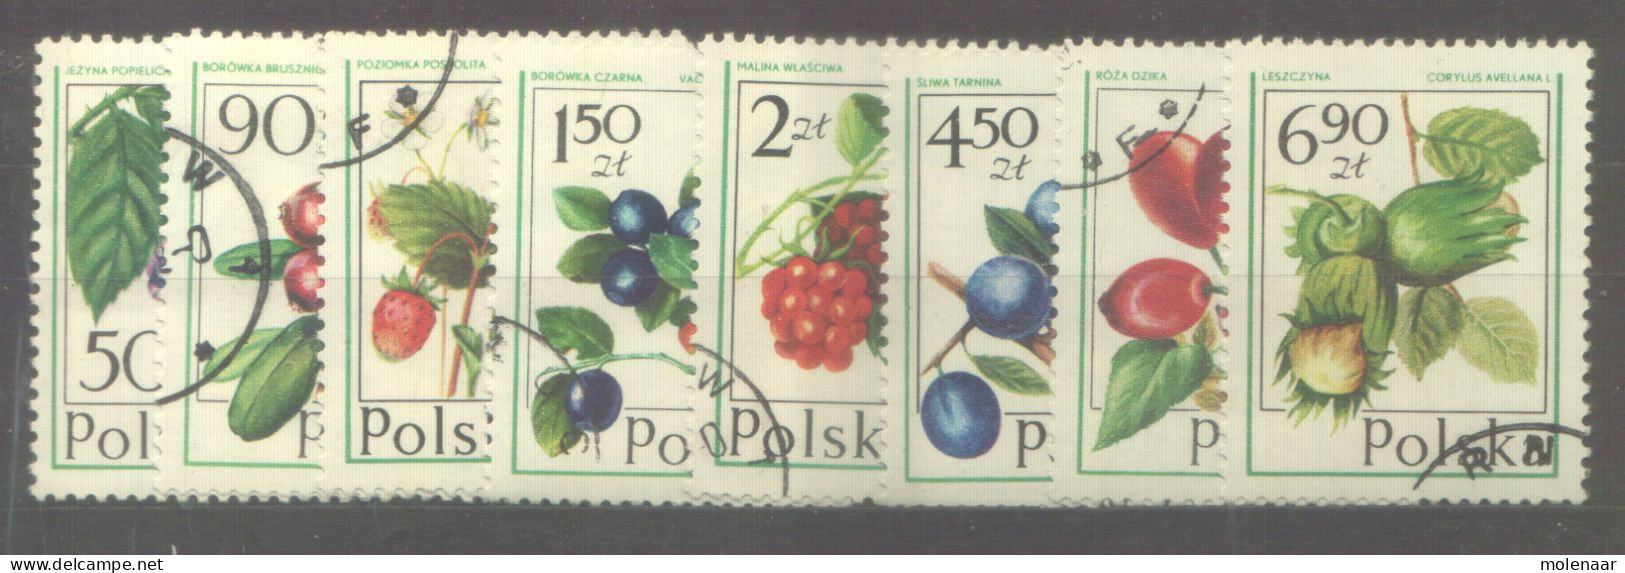 Postzegels > Europa > Polen > 1944-.... Republiek > 1971-80 > Gebruikt No. 2484-2491 (24140) - Oblitérés